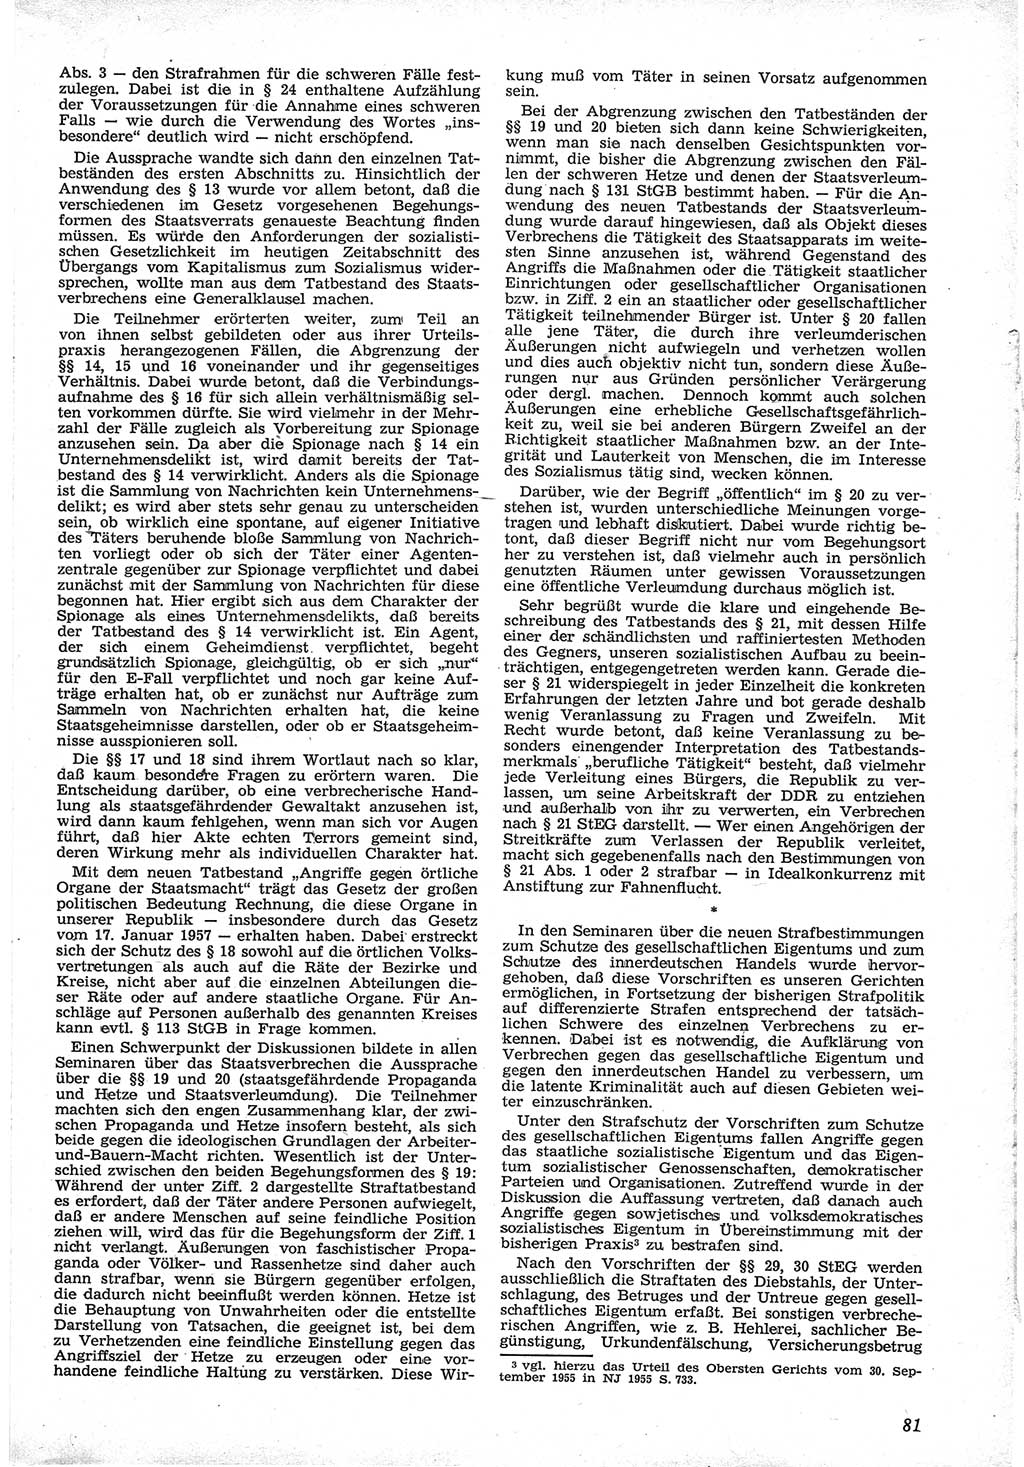 Neue Justiz (NJ), Zeitschrift für Recht und Rechtswissenschaft [Deutsche Demokratische Republik (DDR)], 12. Jahrgang 1958, Seite 81 (NJ DDR 1958, S. 81)